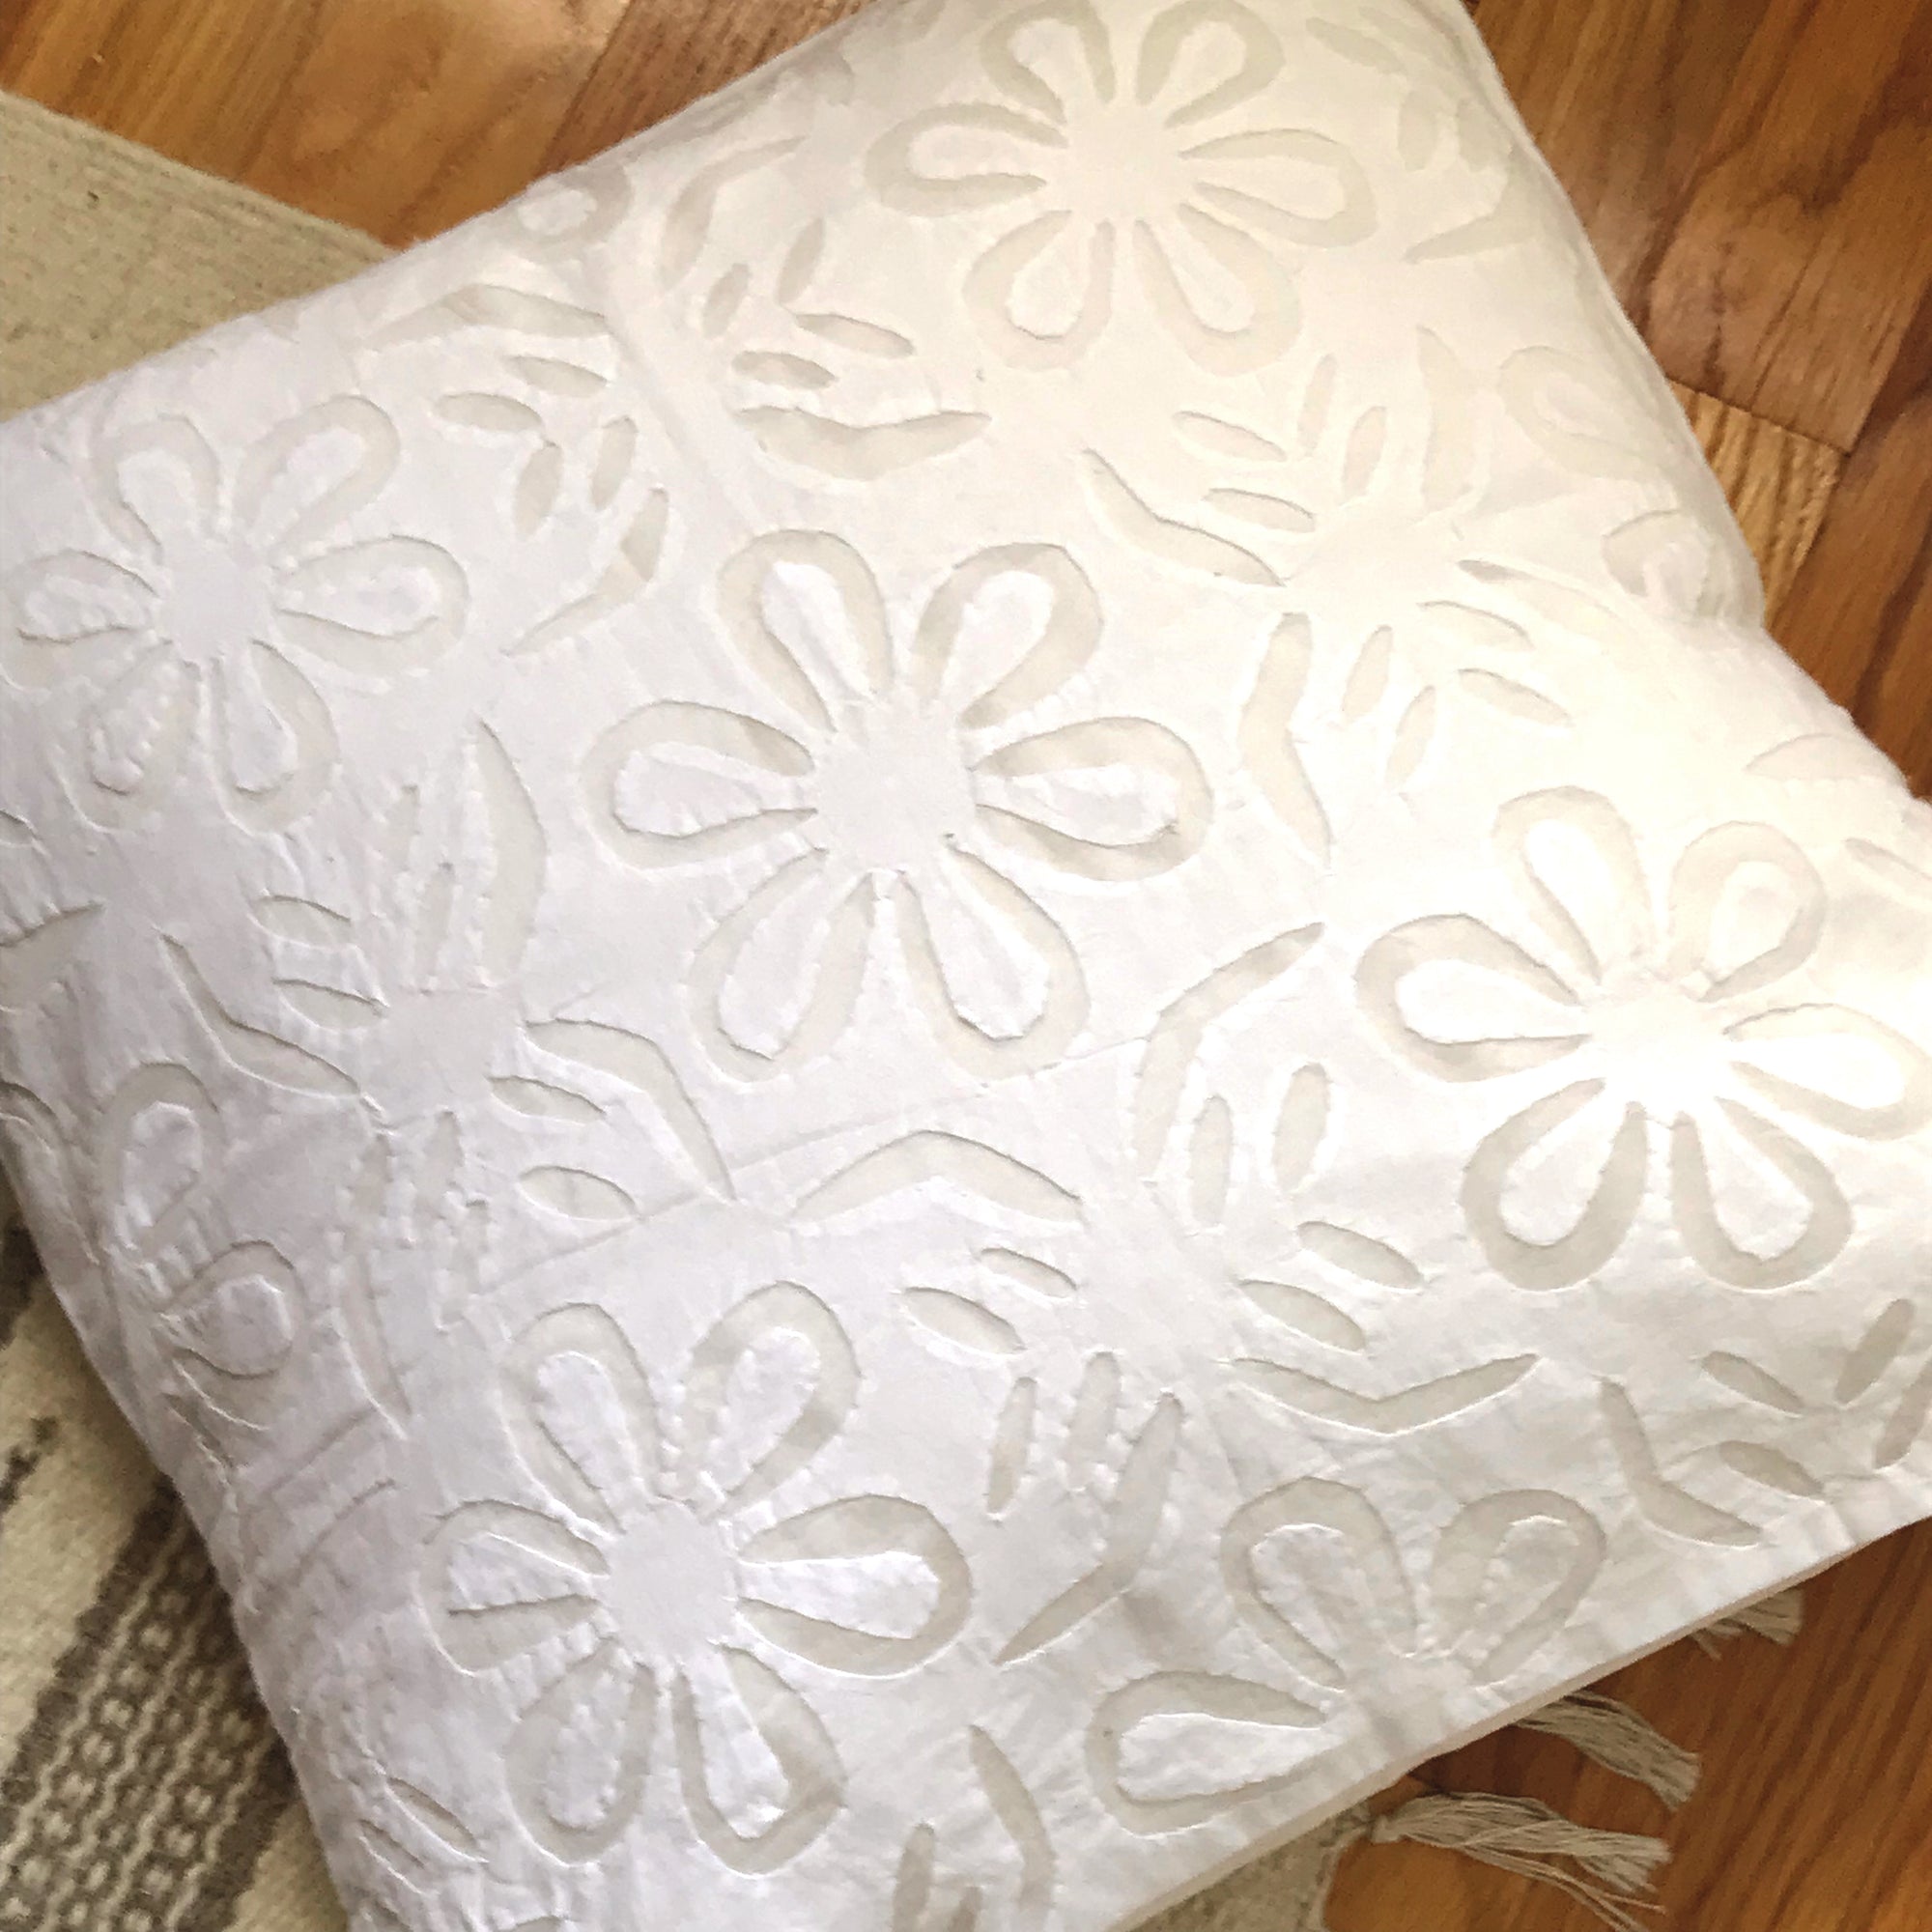 Barmer Appliqué Pillow Cover - White on White - 5 Flowers